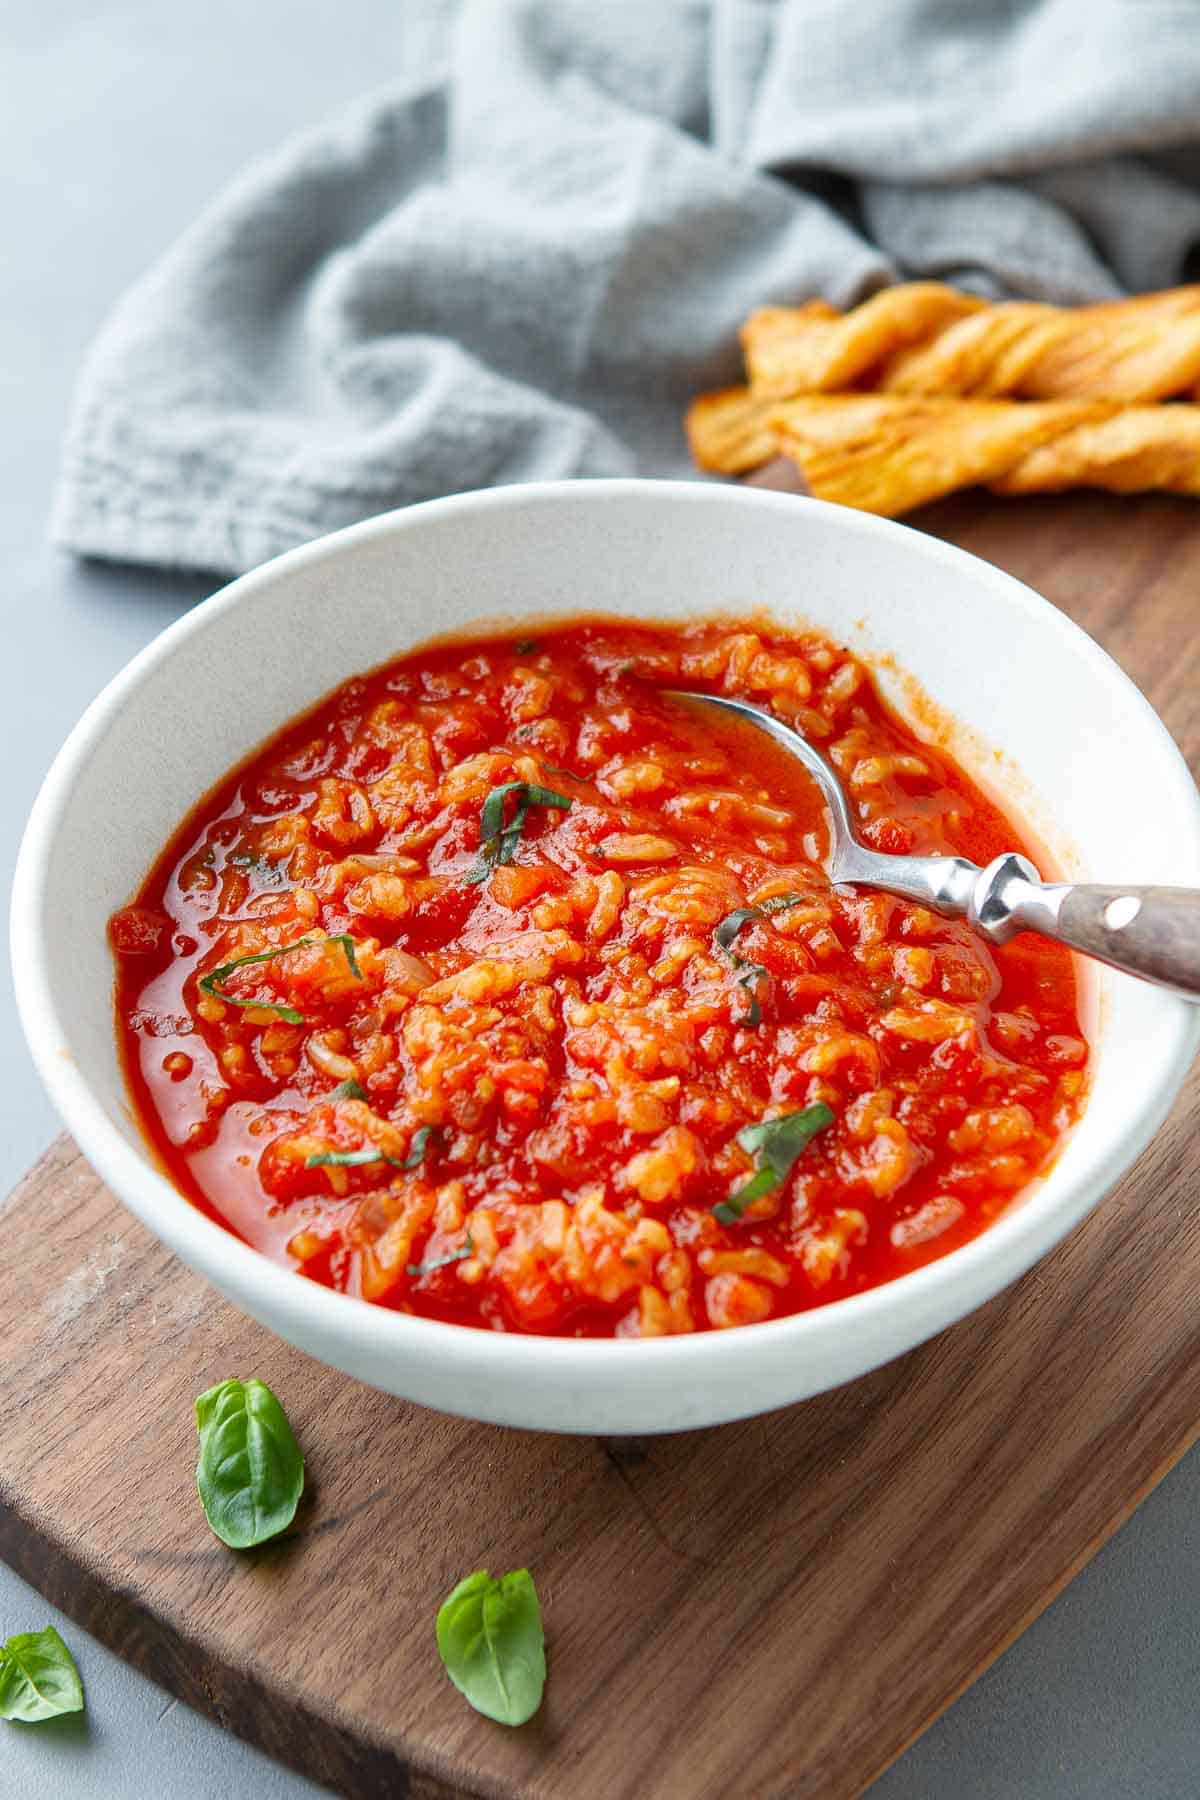 Miska pomidorowej zupy ryżowej z łyżką, spoczywająca na drewnianej desce, z serwetką z tyłu.